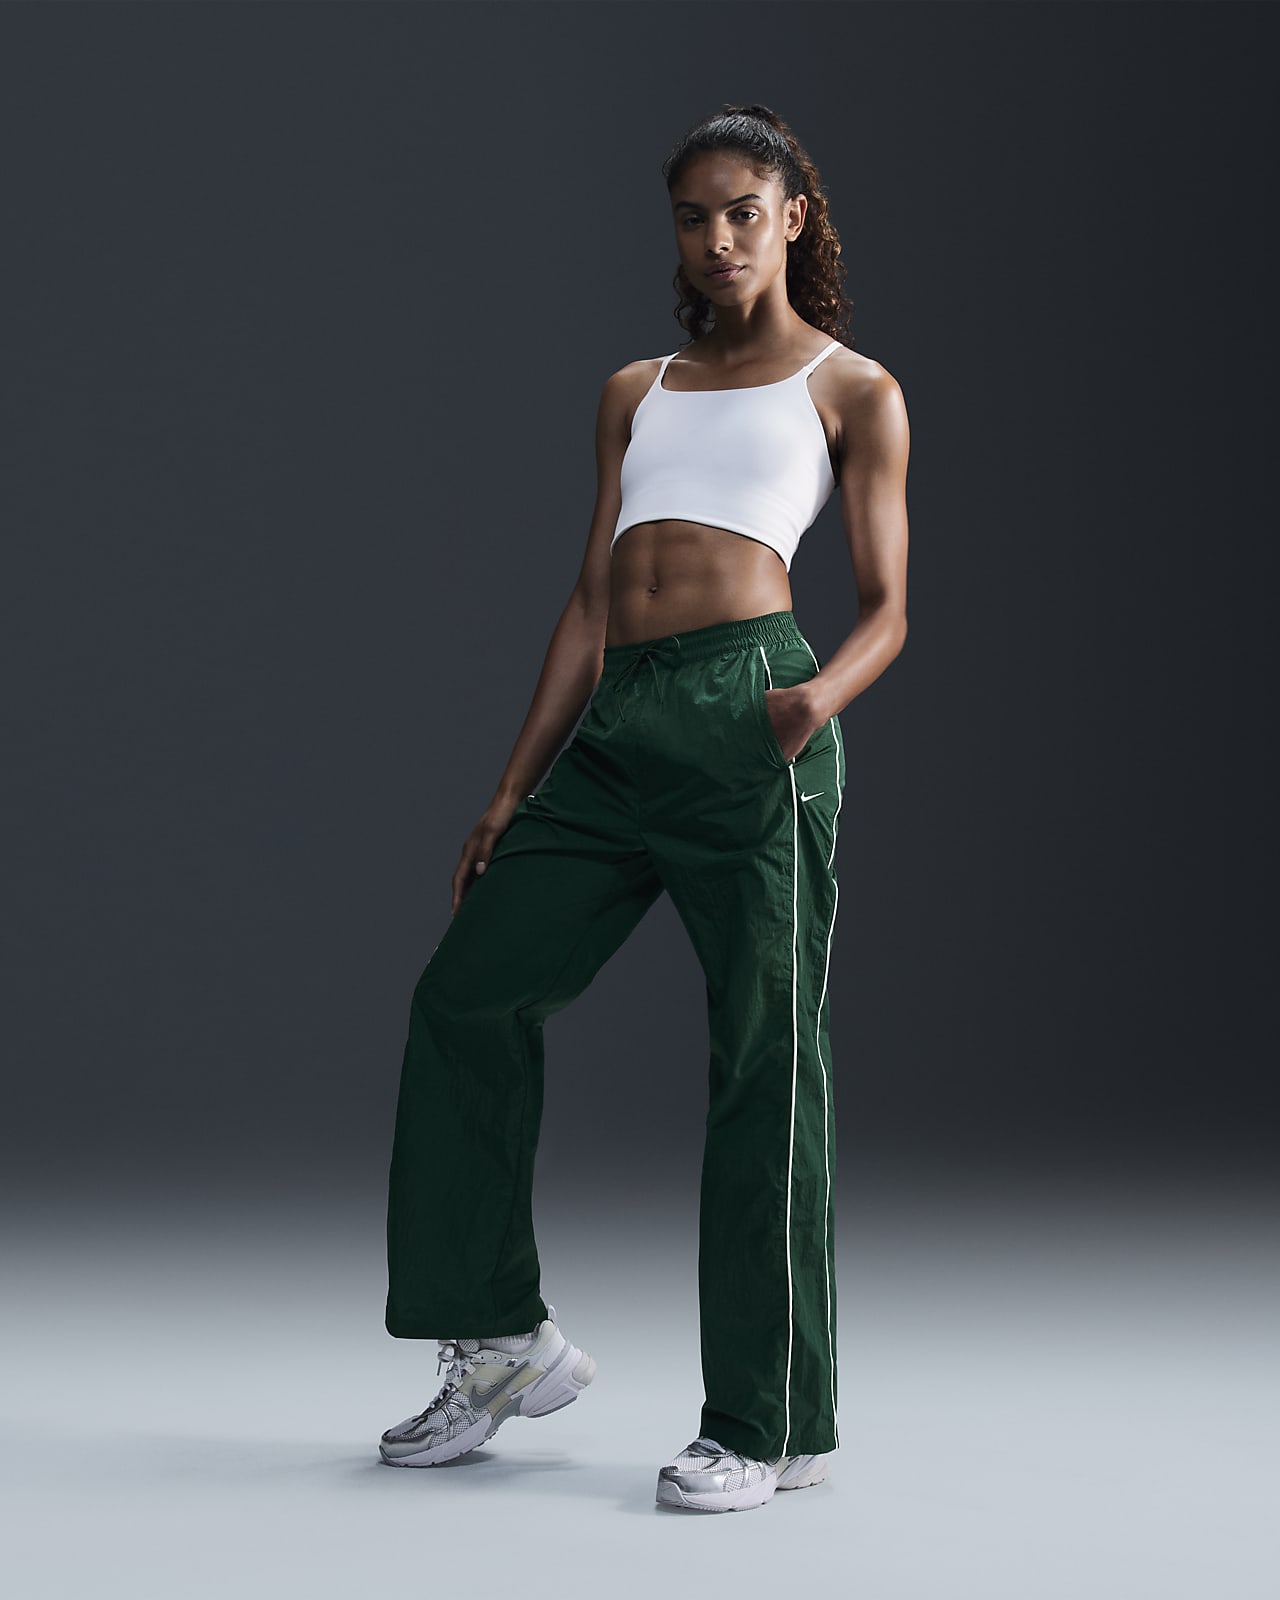 Nike Windrunner Pantalons de teixit Woven i cintura alta amb vora oberta - Dona